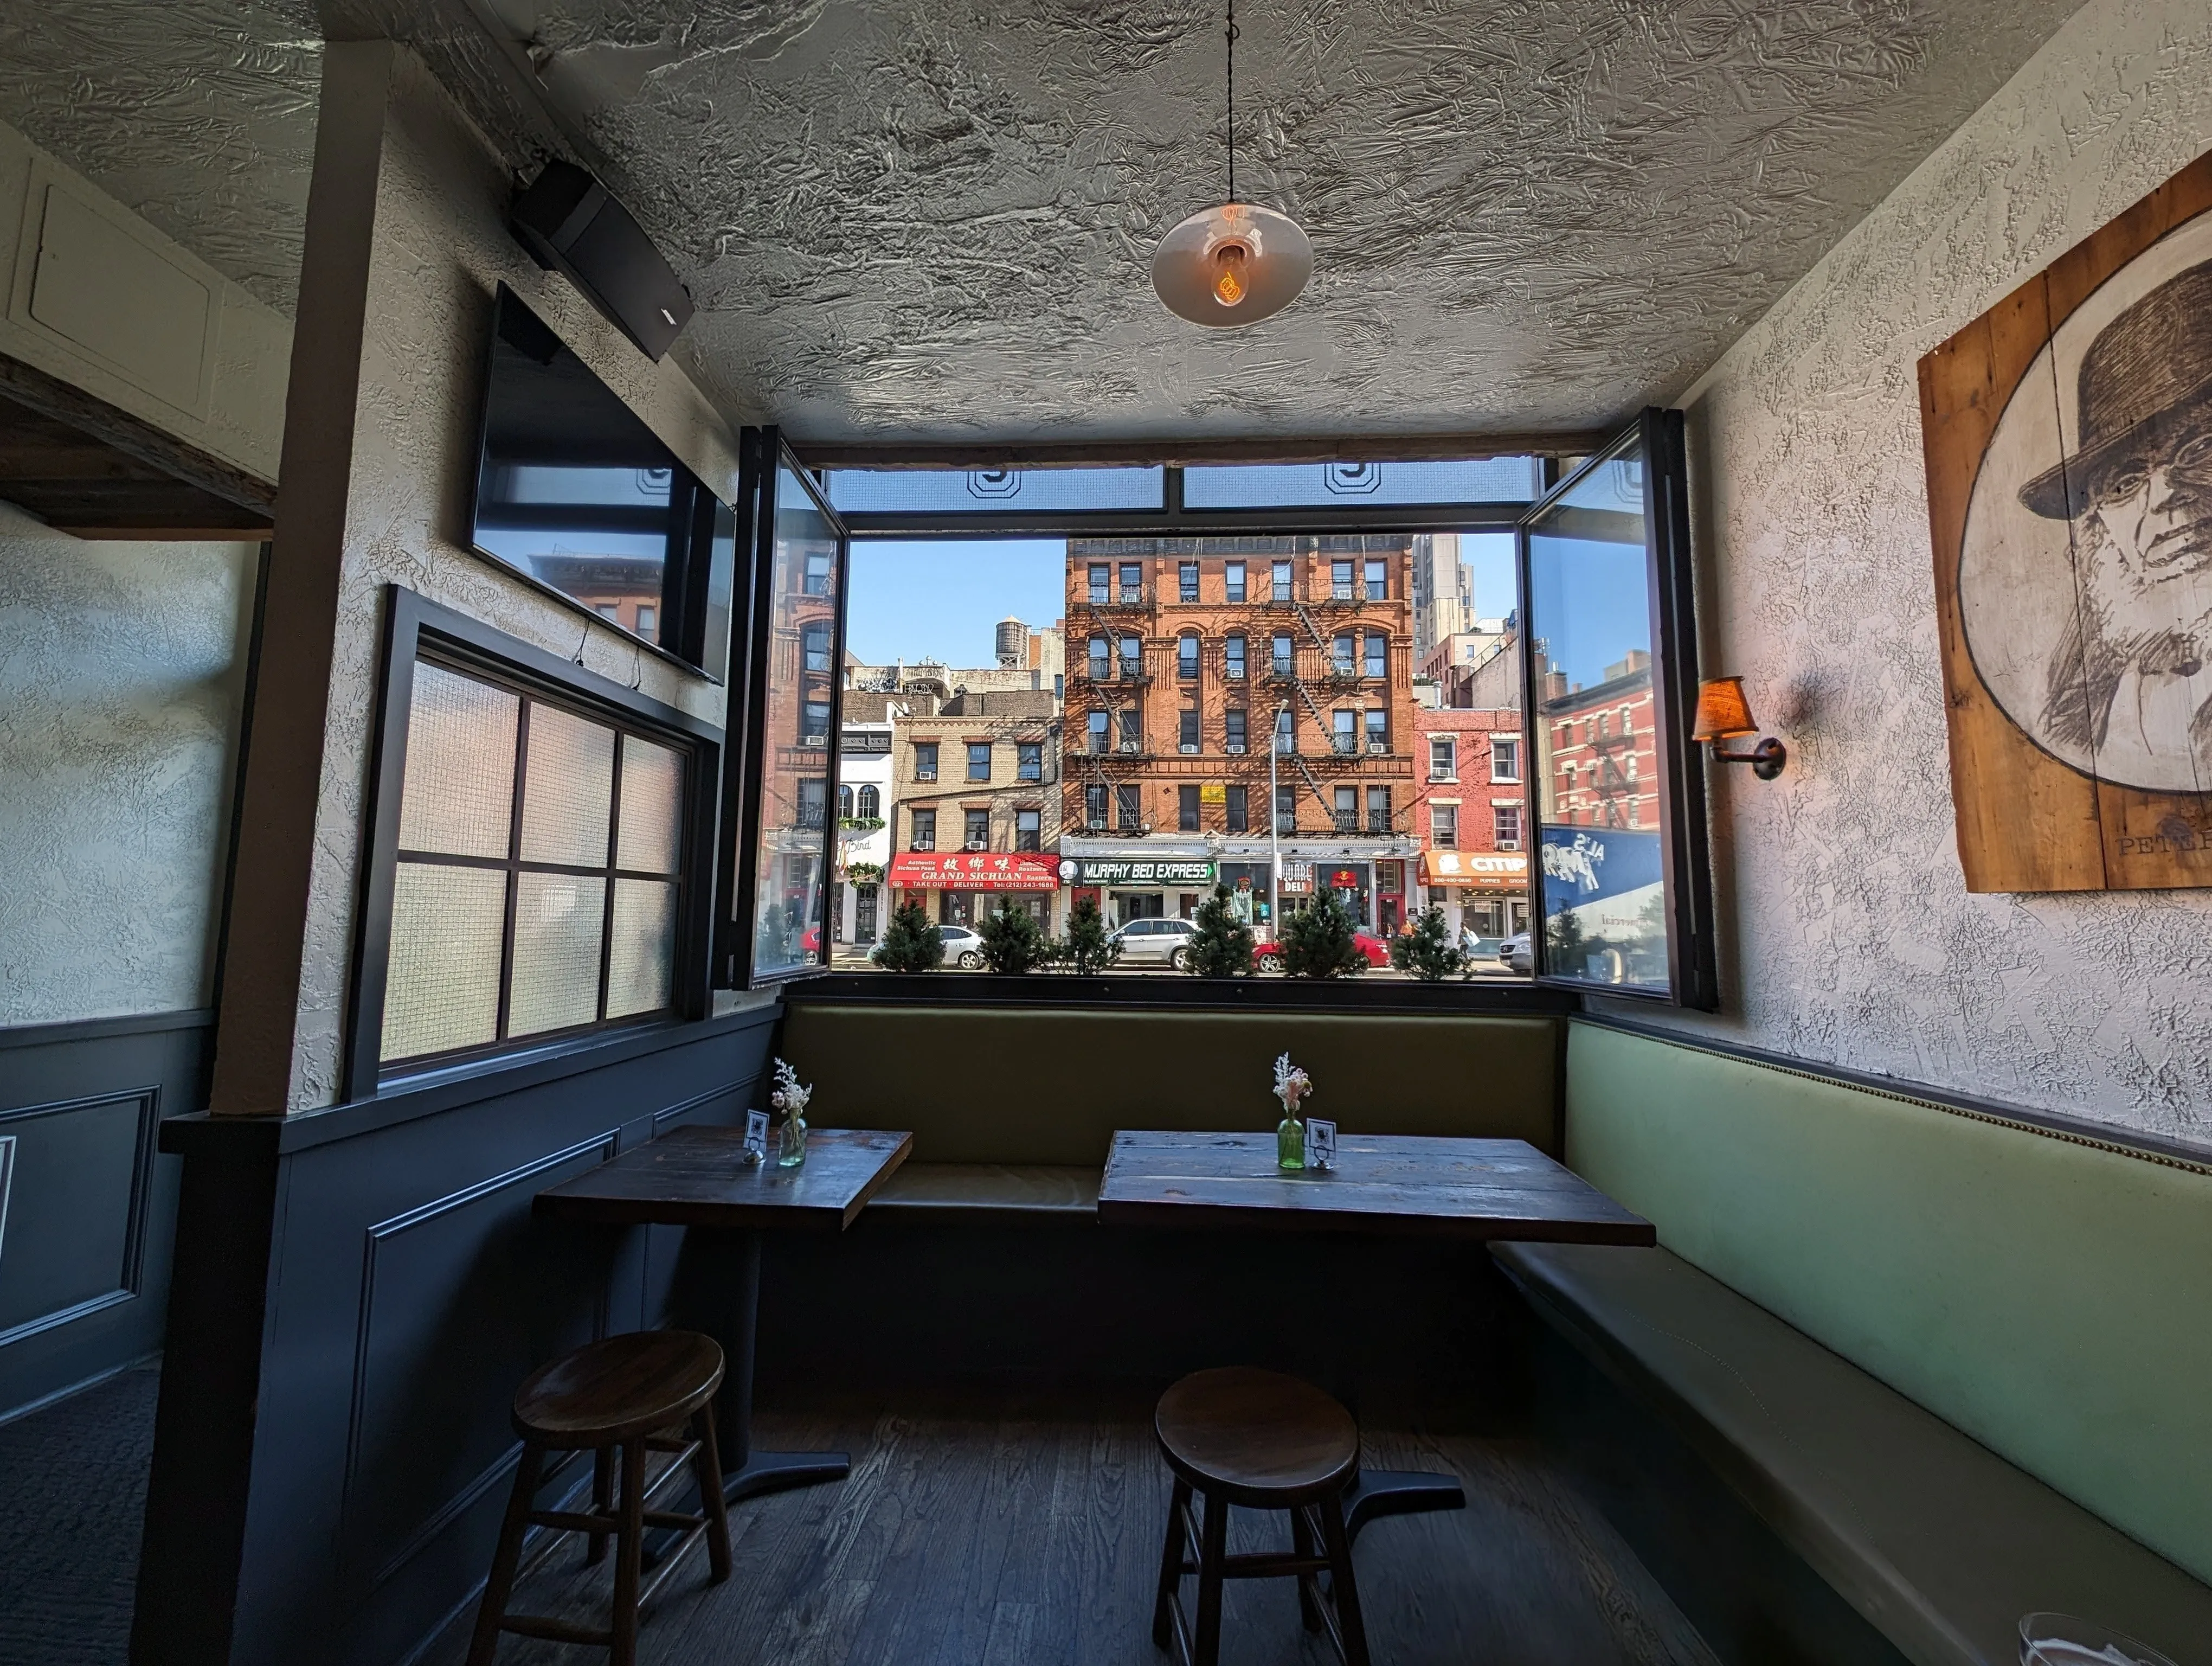 Фото ресторана в Нью-Йорке с видом из окна на здание через улицу, сделанное с помощью Google Pixel 8 Pro.